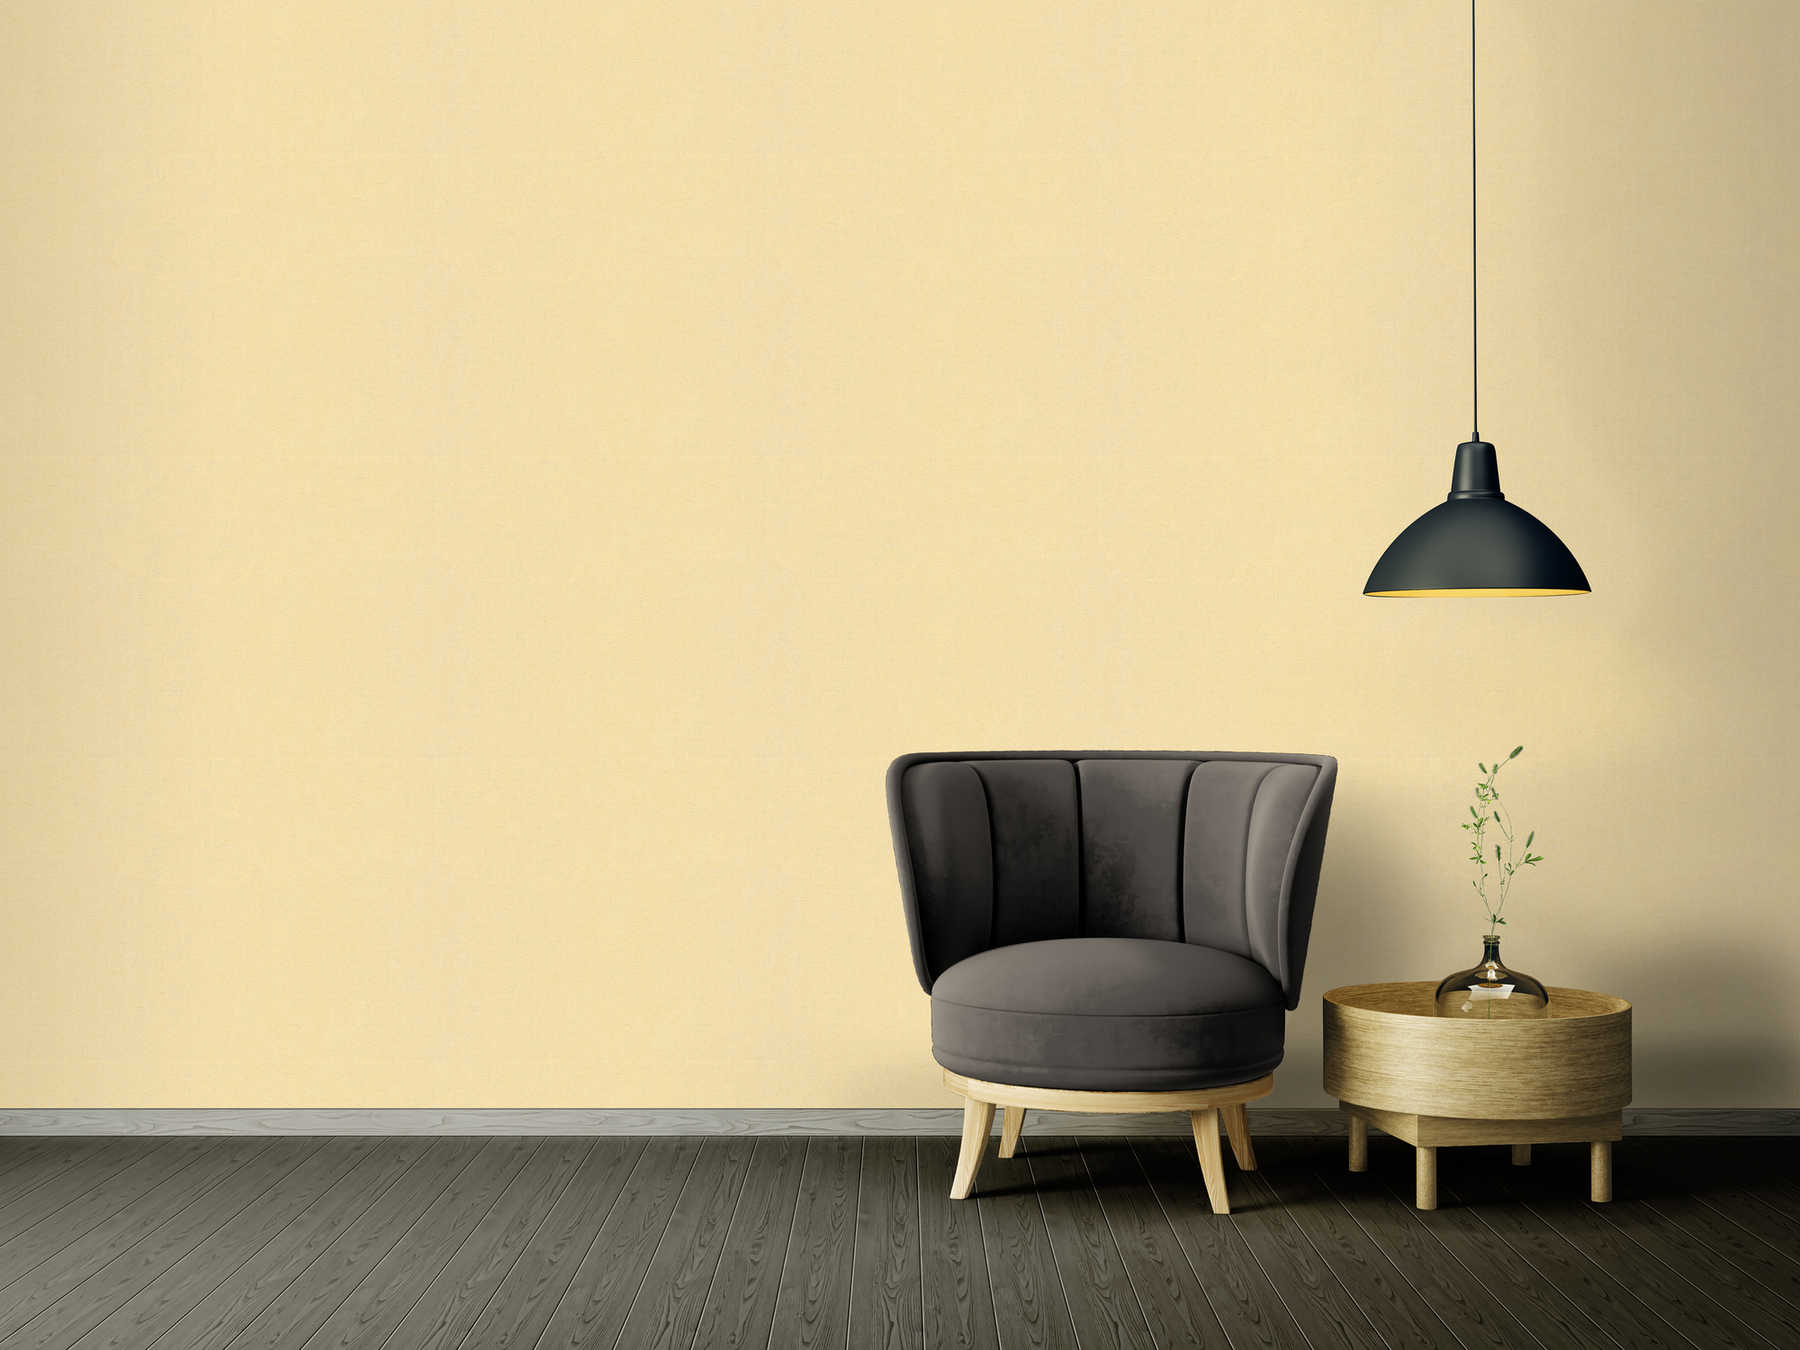             VERSACE Home vliesbehang effen - design & glanseffect - goud
        